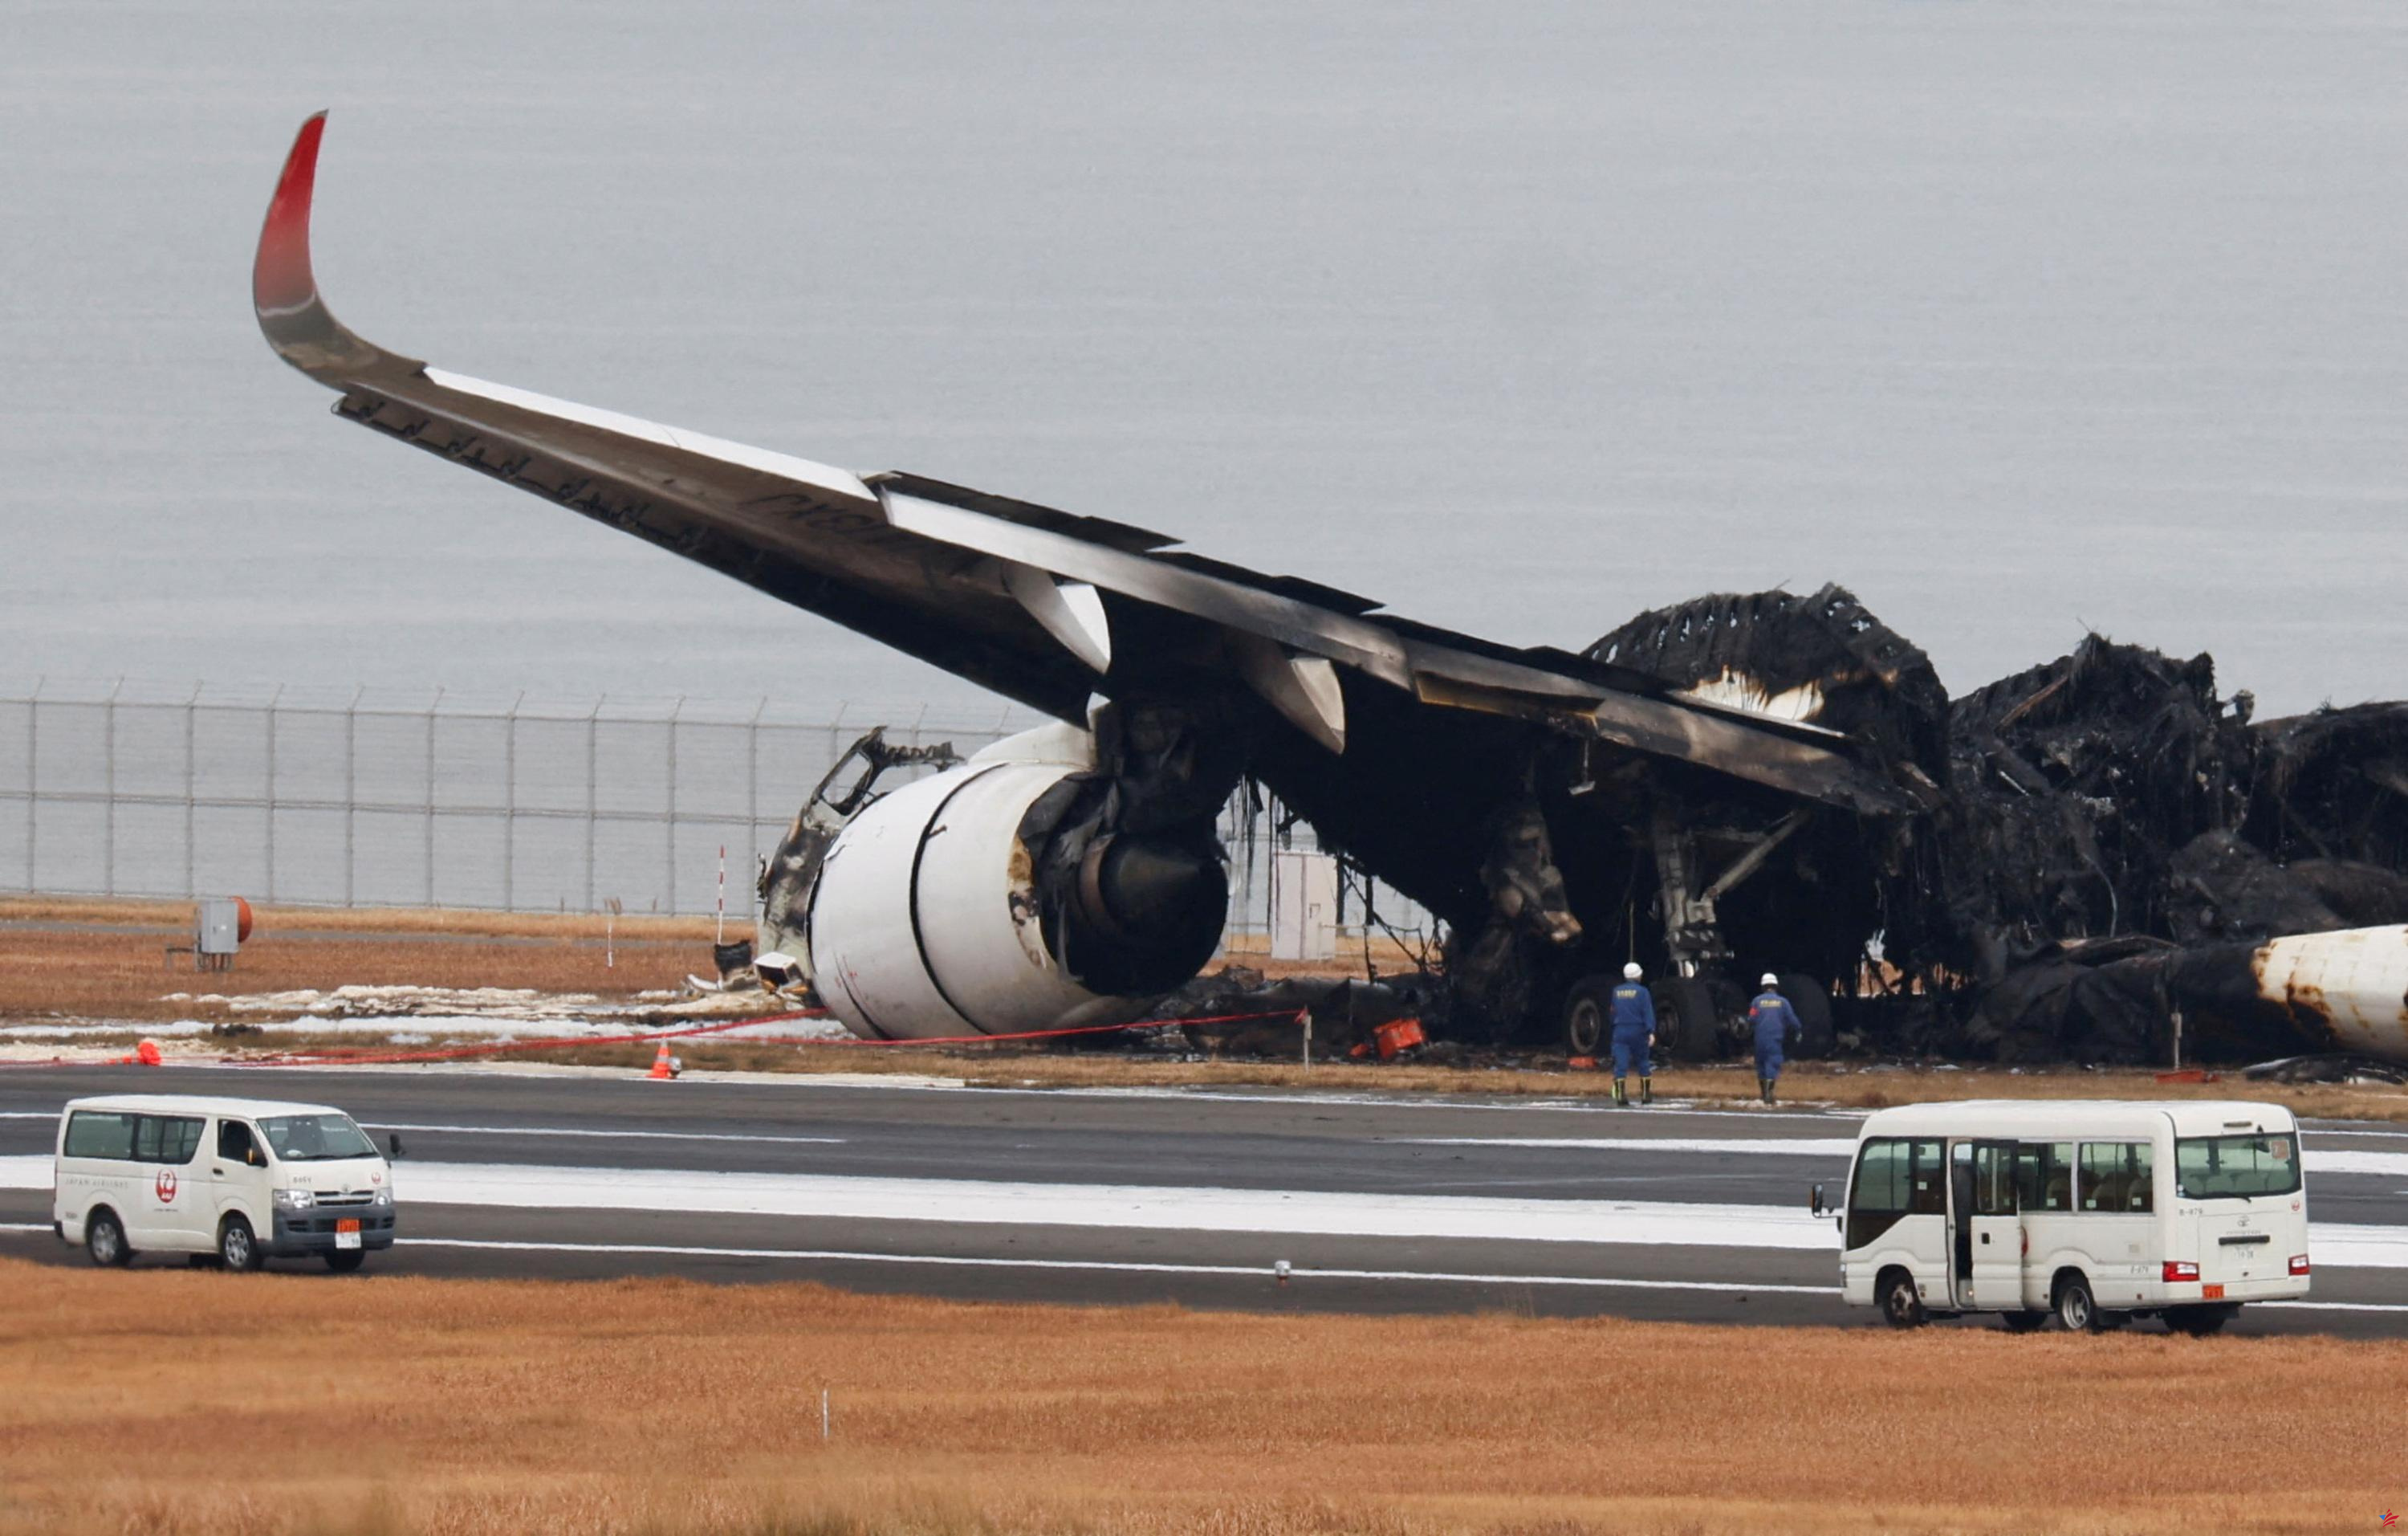 Aeropuerto de Tokio: otros desastres aéreos evitados en el último momento gracias a la frialdad de la tripulación